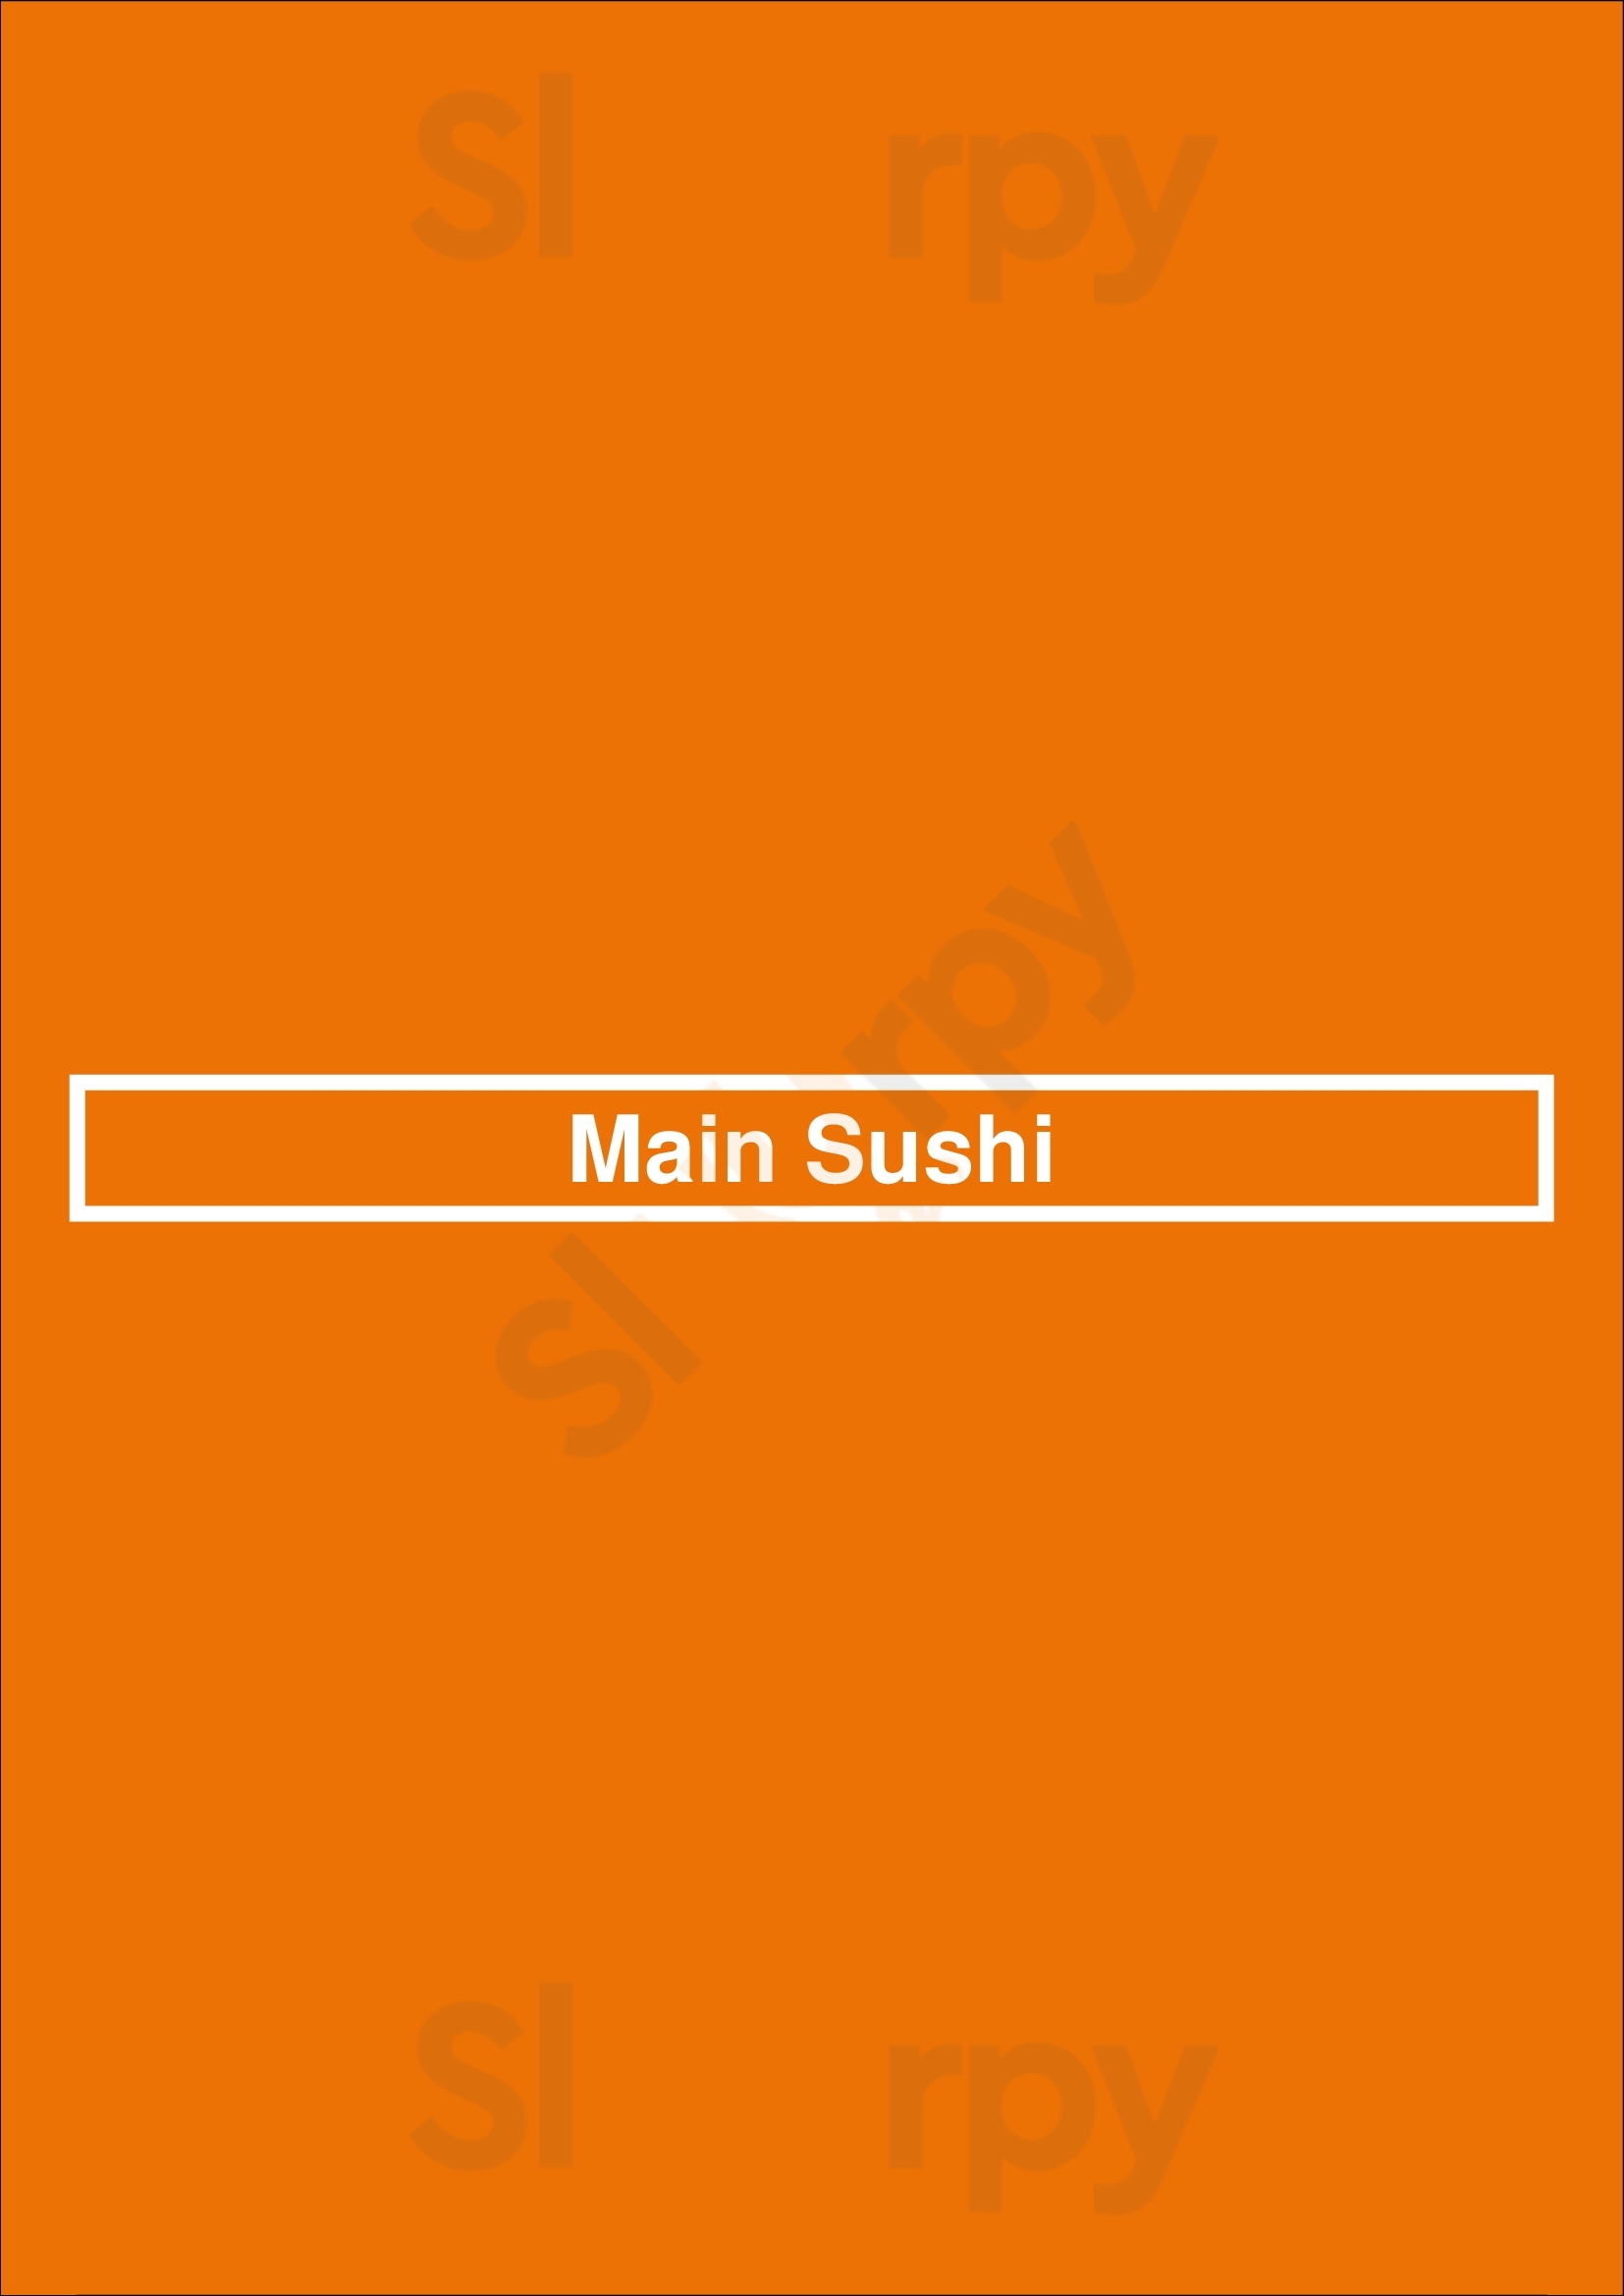 Main Sushi Markham Menu - 1